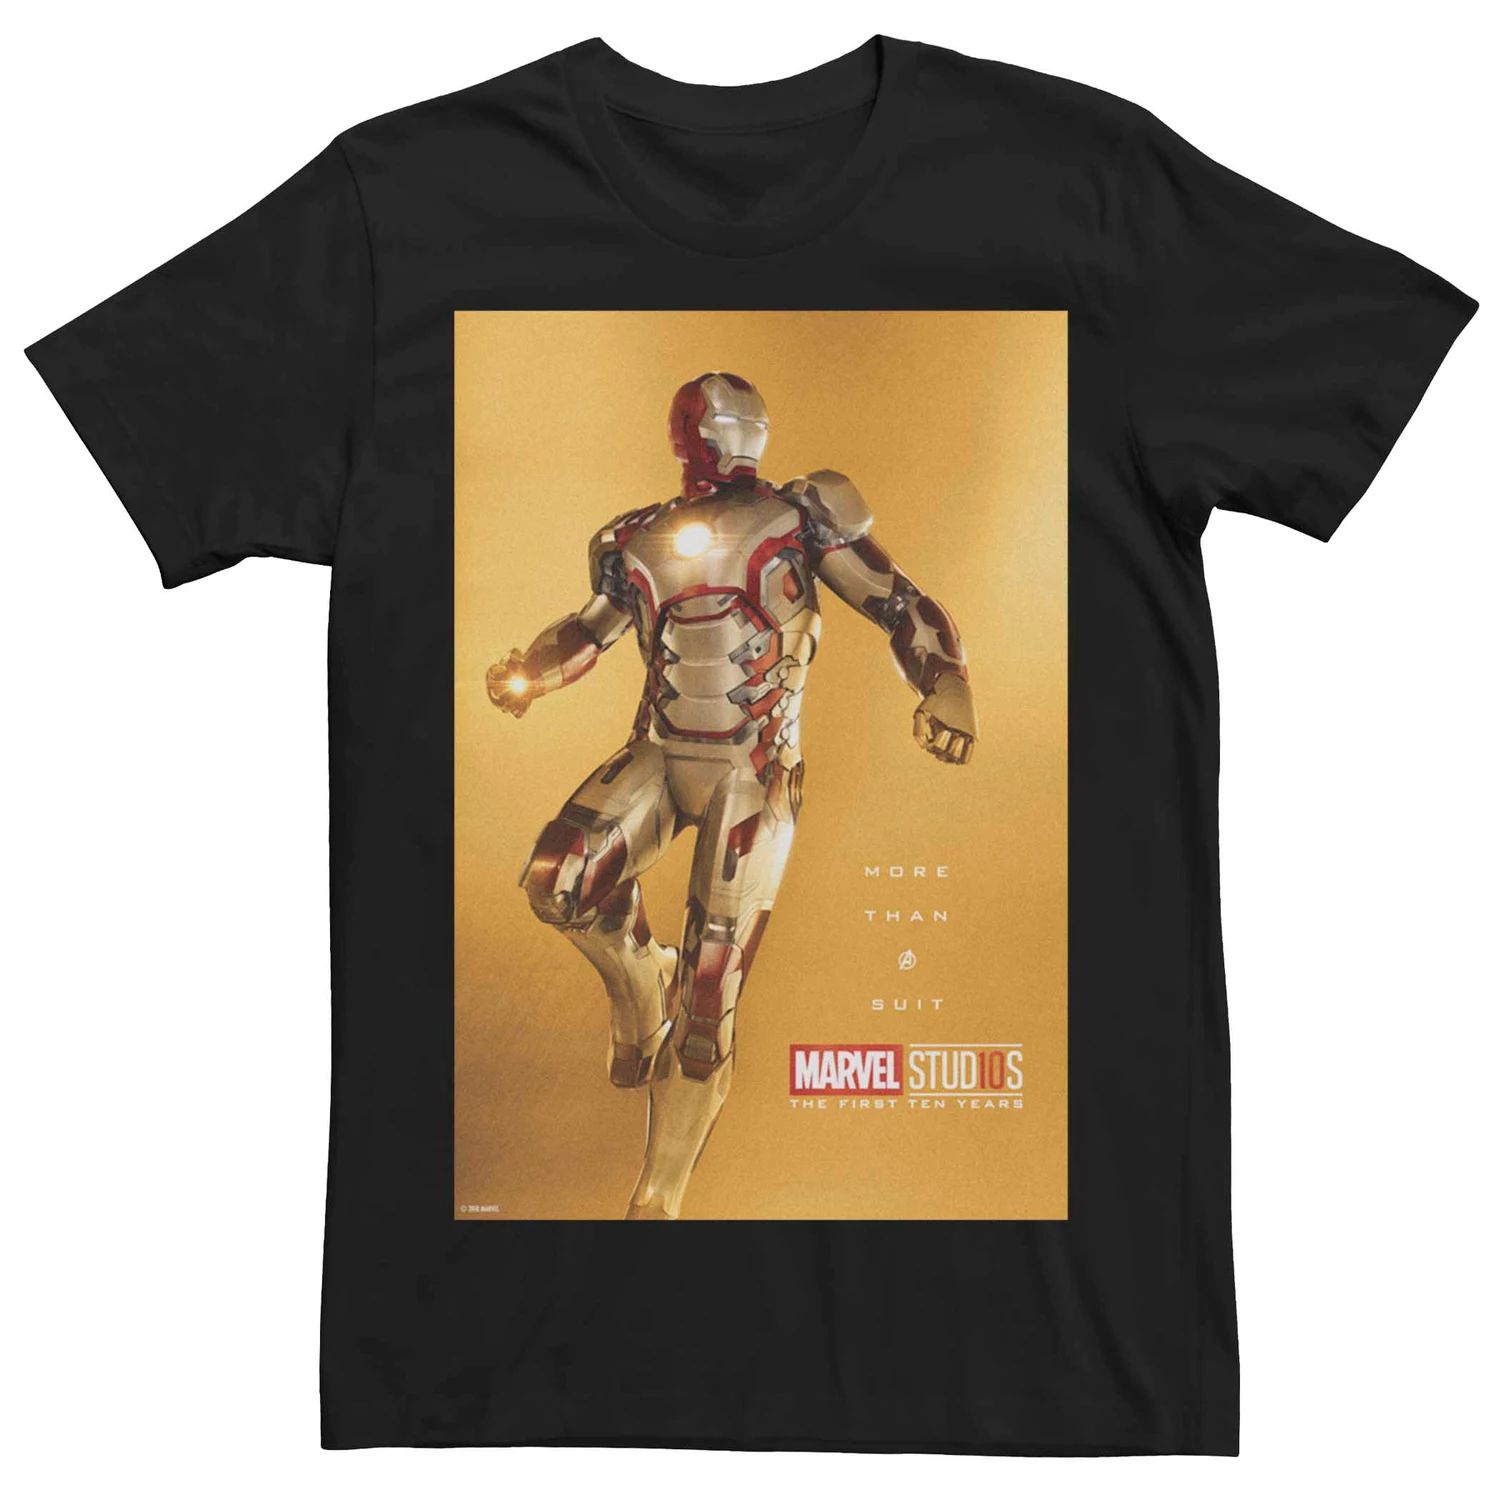 Мужская футболка с плакатом Marvel Studios Iron Man для подростков «Больше, чем костюм» Licensed Character